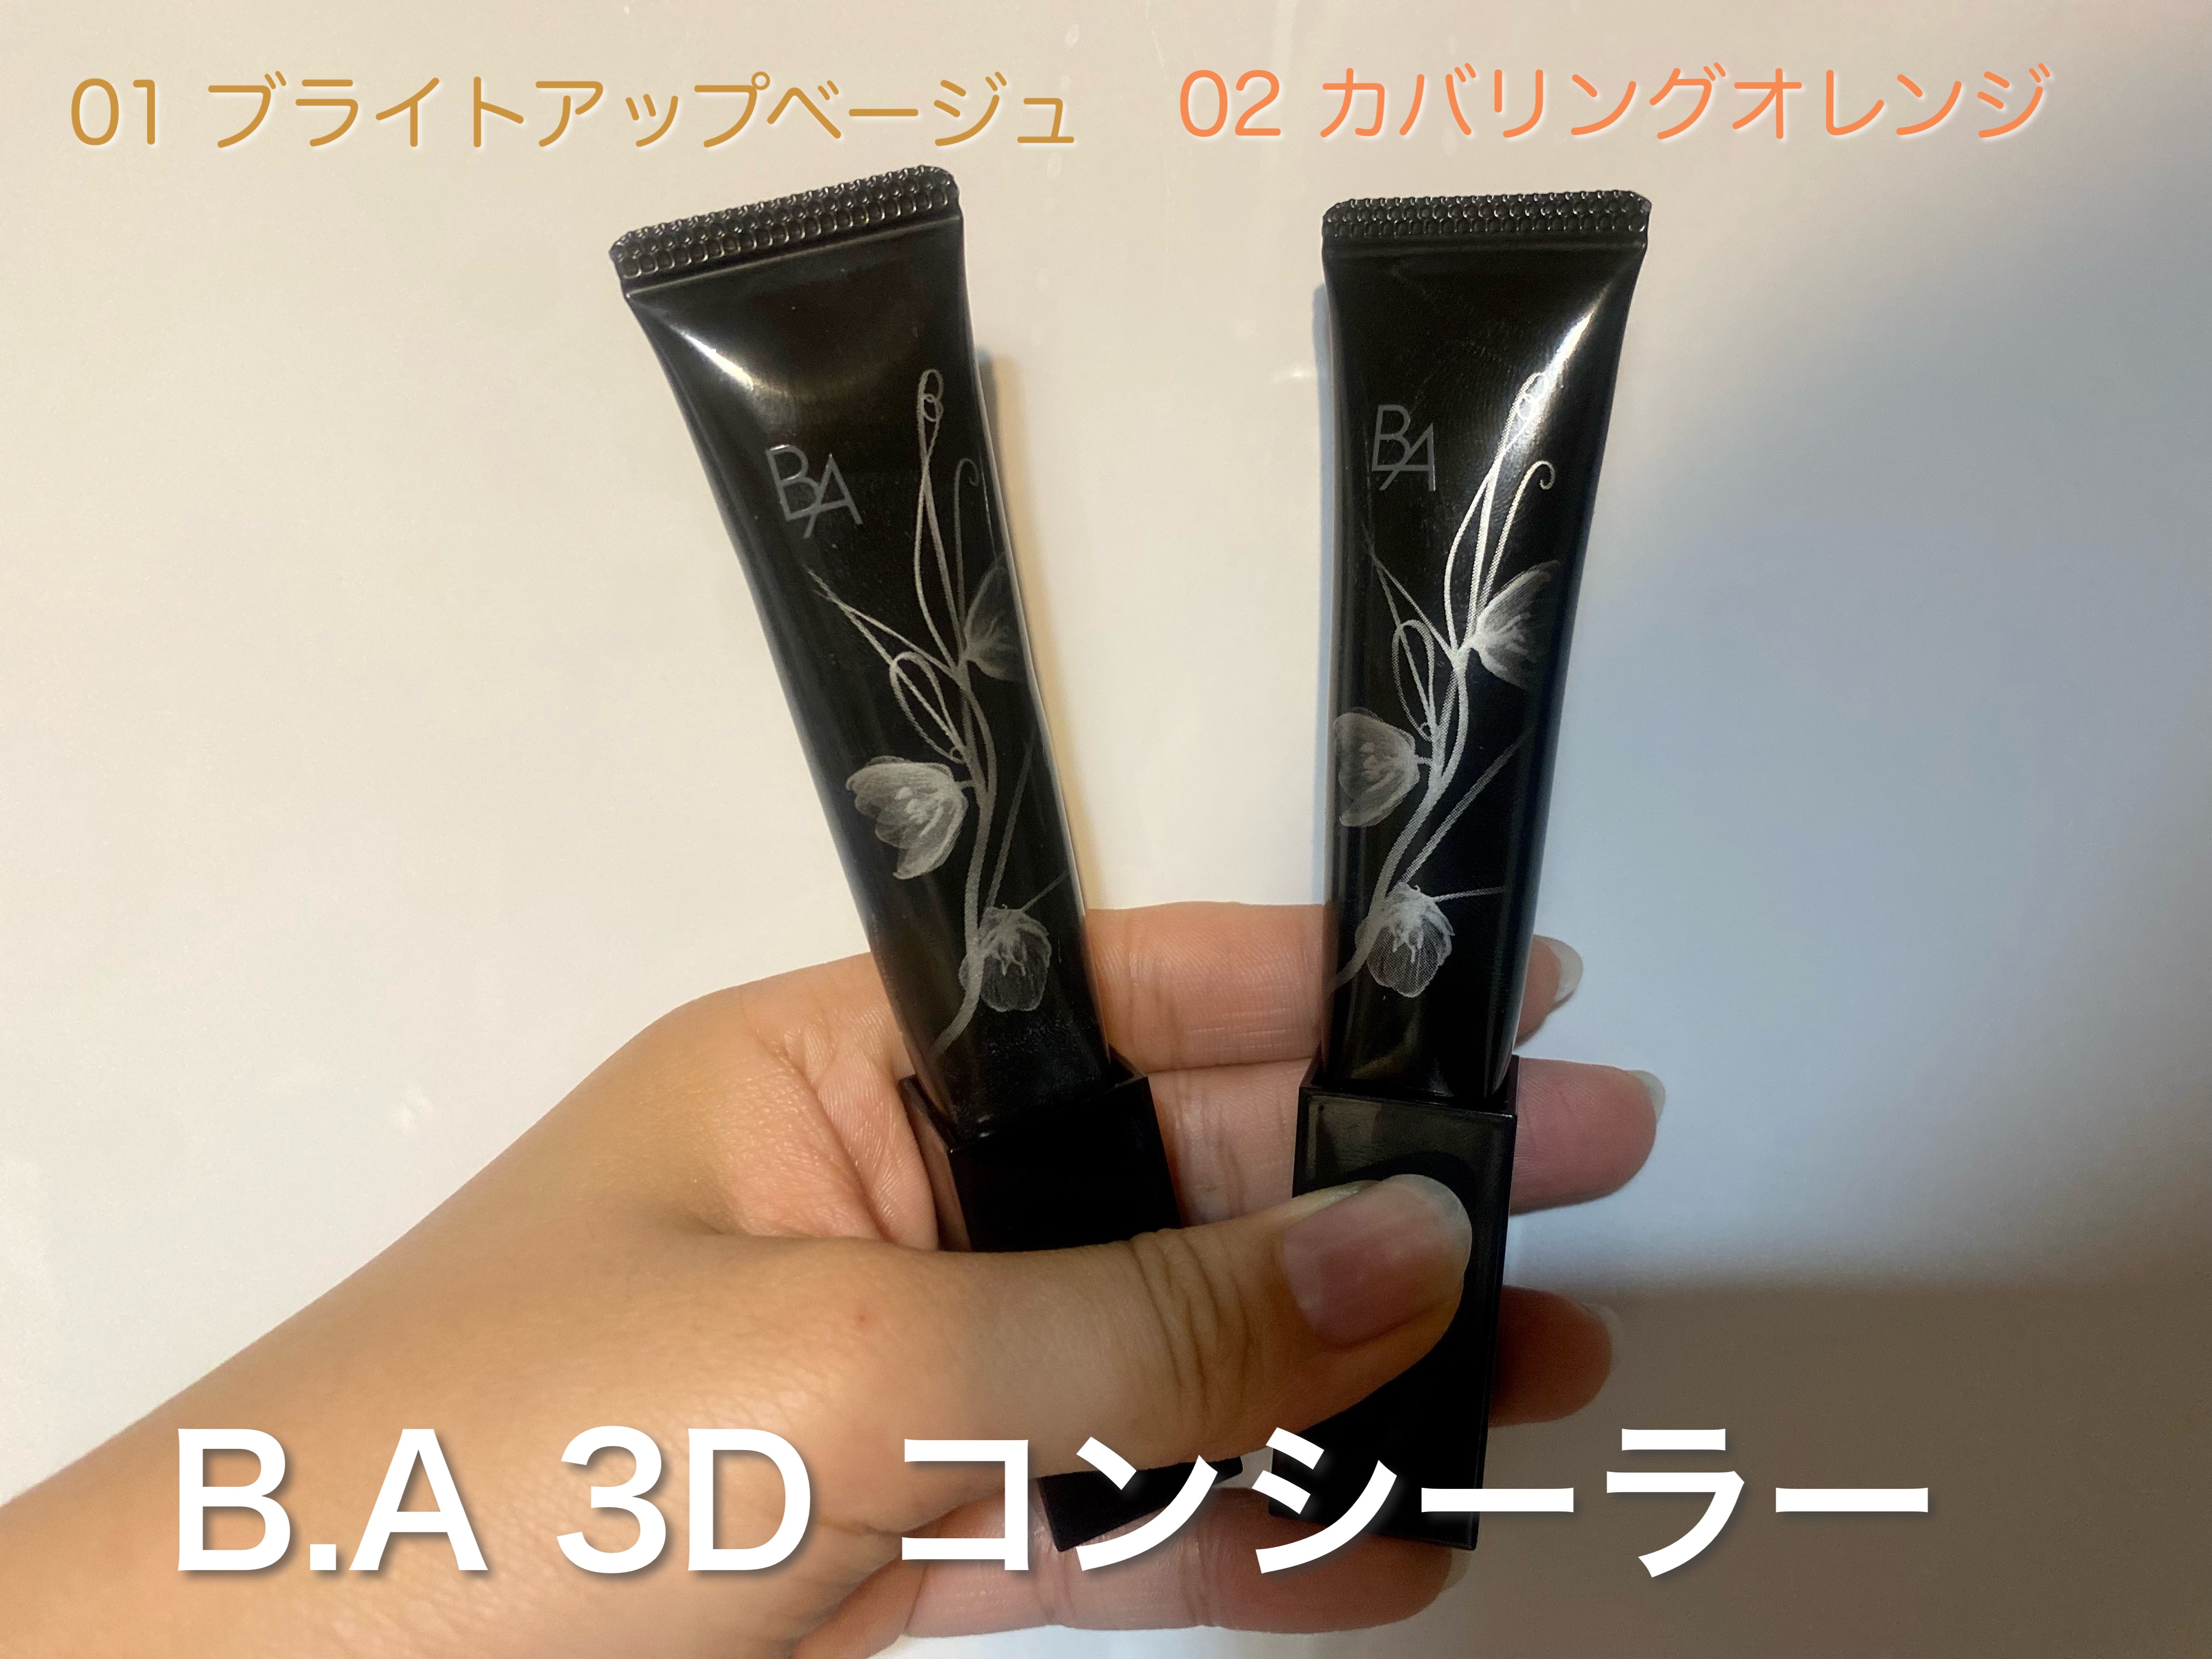 ポーラ BA 3Dコンシーラー 02